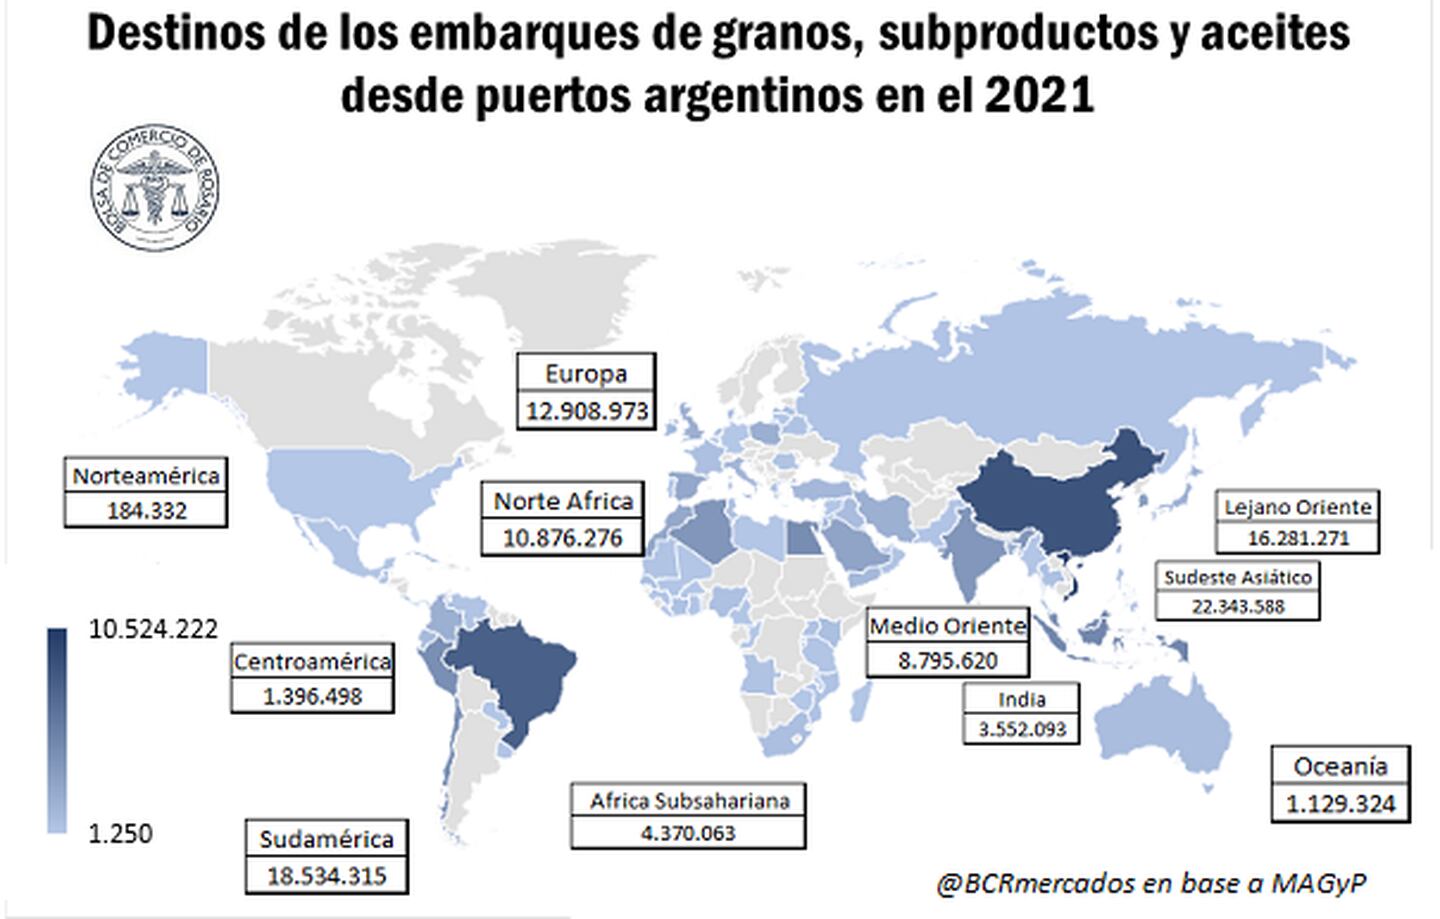 Exportación de granos, subproductos y aceites desde puertos argentinos en 2021.dfd